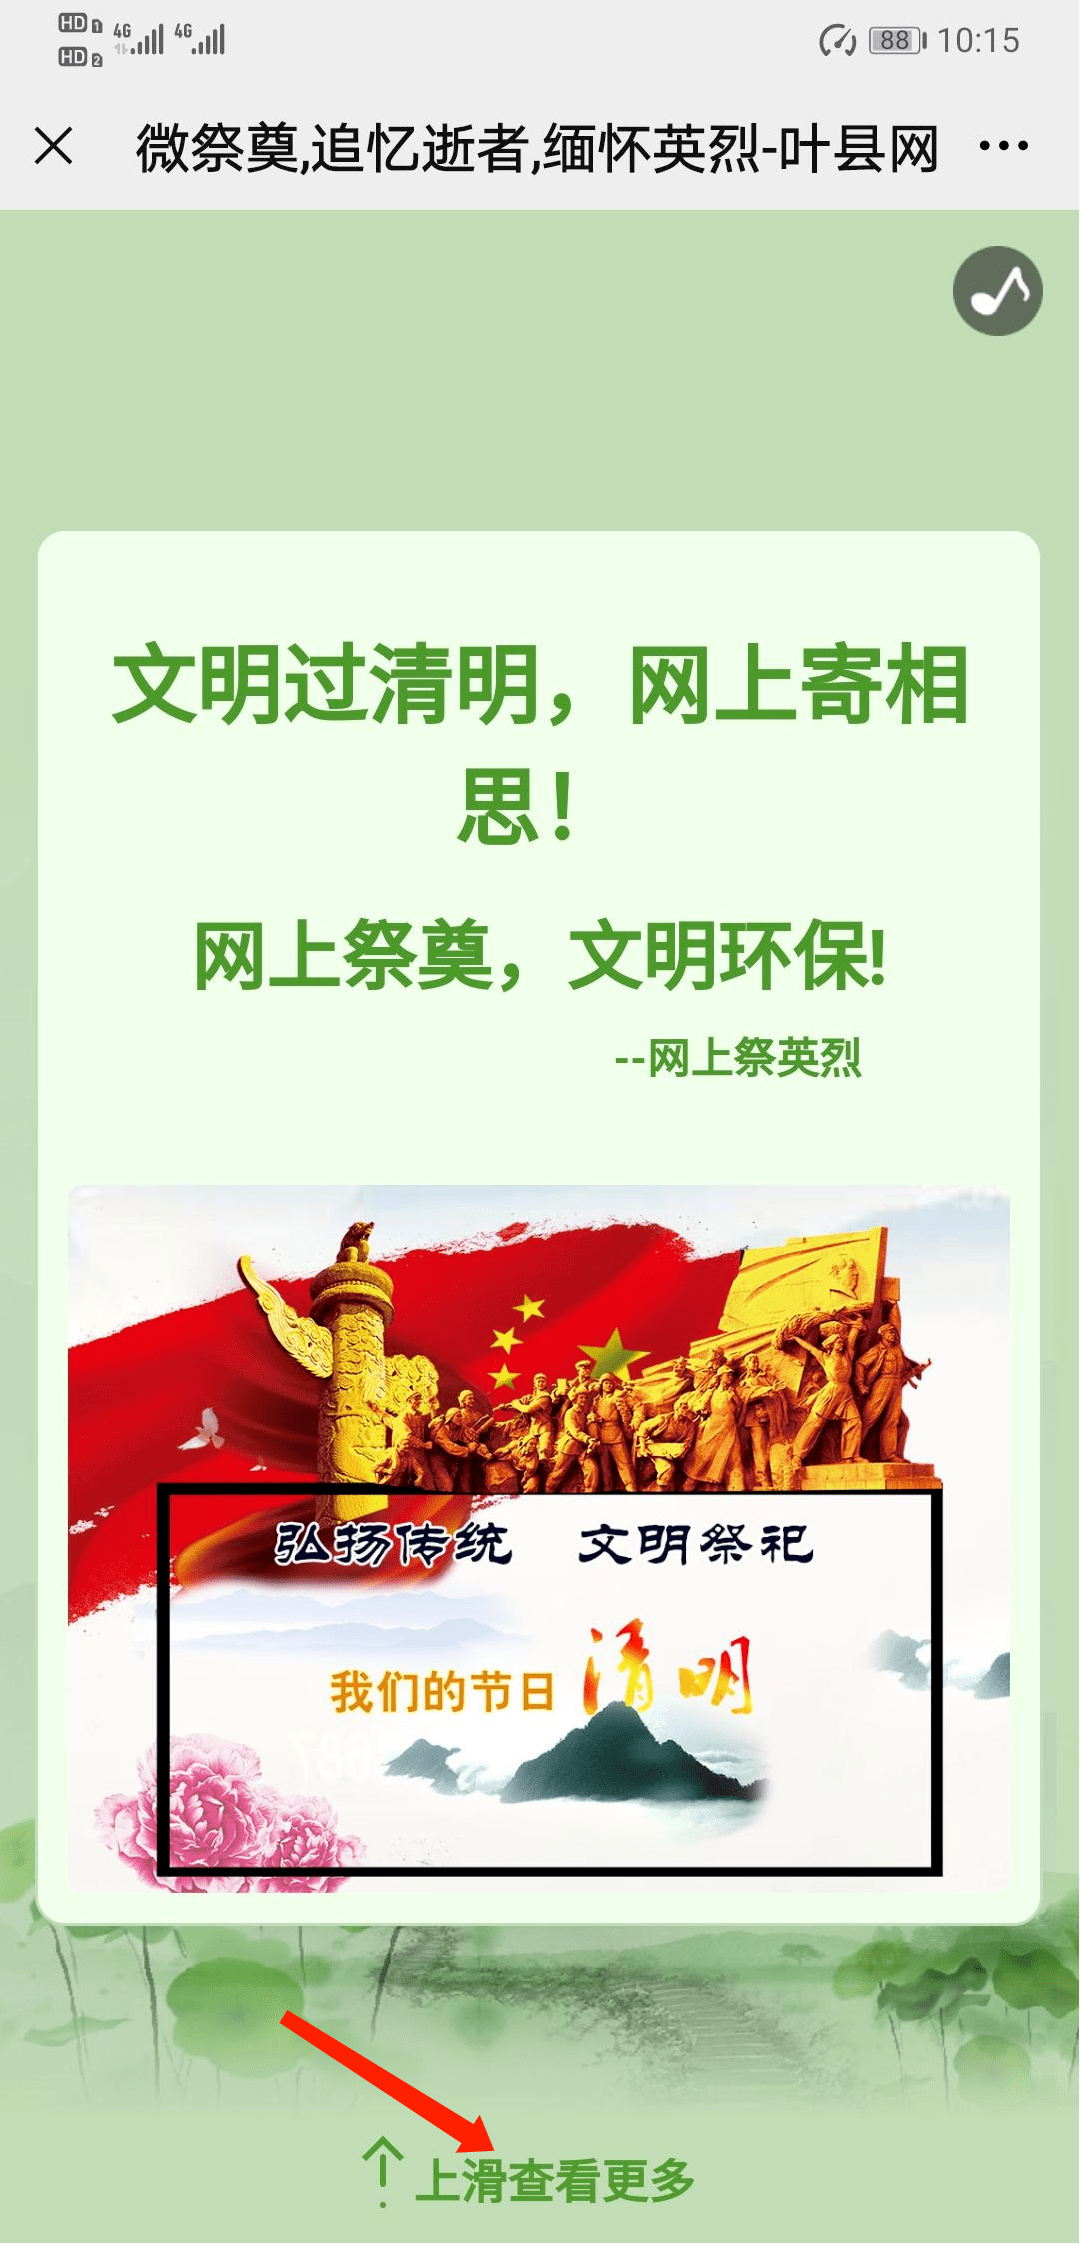 致敬·清明祭英烈丨叶县共青团文明祭祀·绿色清明网上祭奠活动倡议